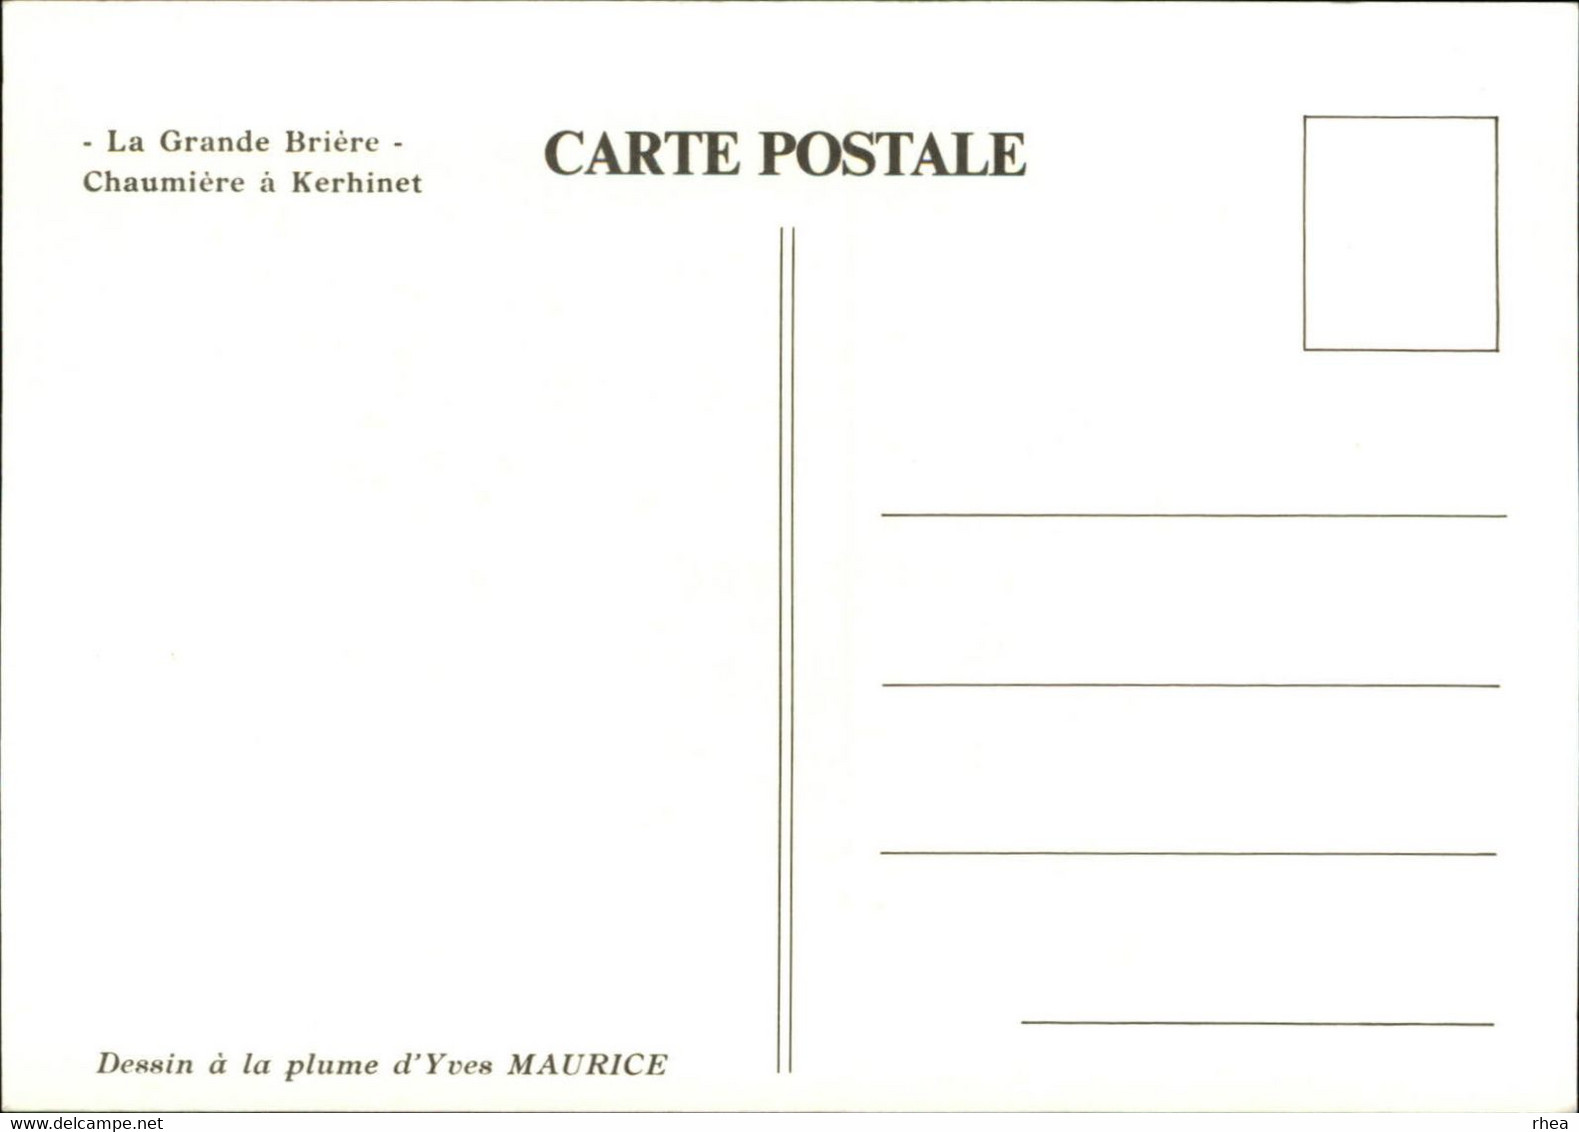 44 - SAINT-LYPHARD - LA GRANDE BRIERE - 6 cartes - dessin à la plume d'Yves Maurice - Kerhinet -